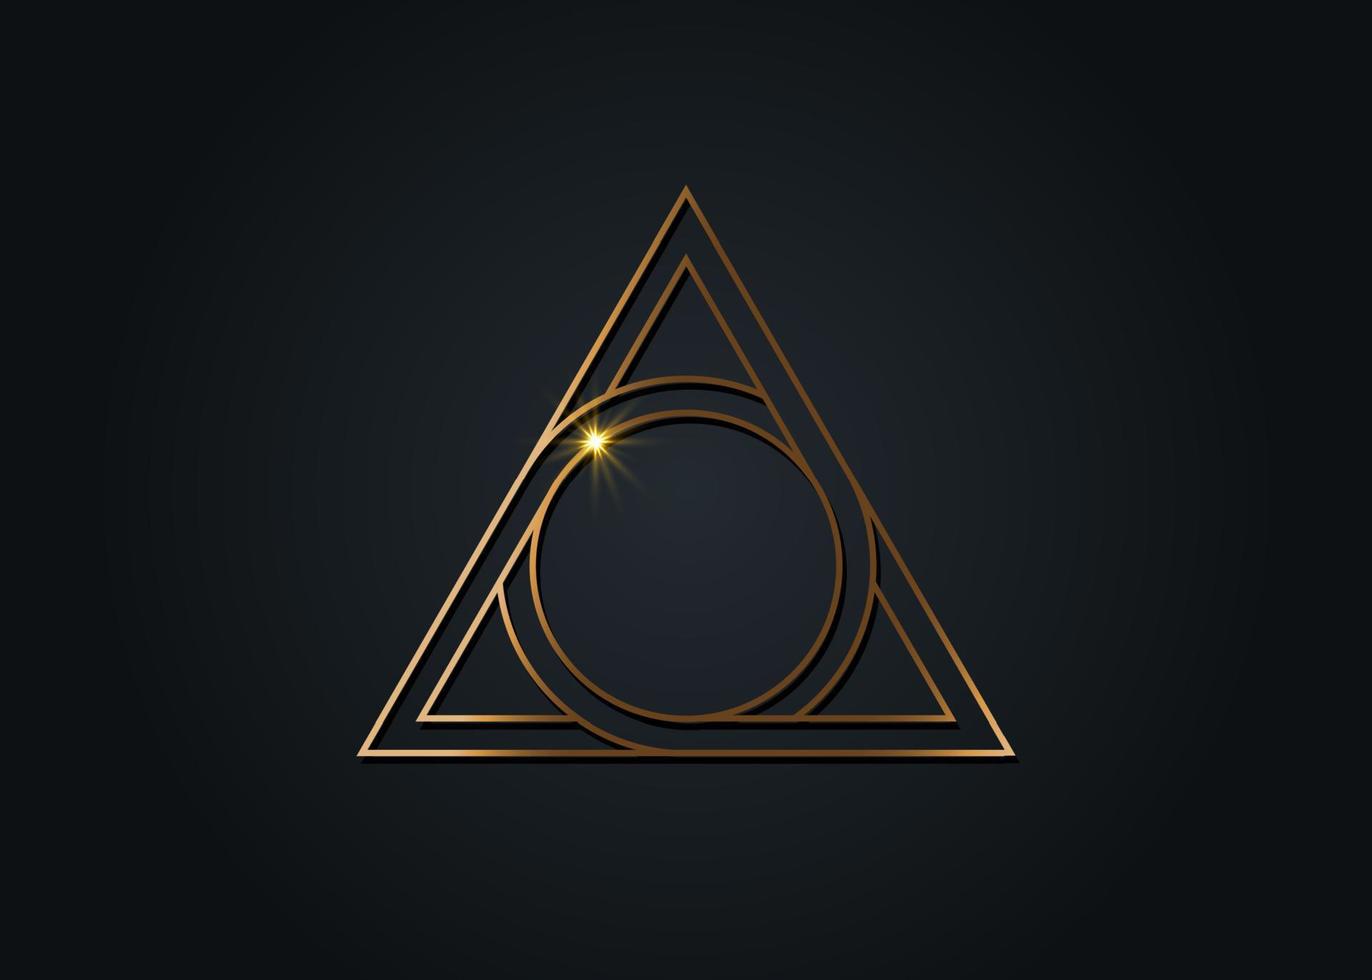 letra a y letra o, diseño de logotipo dorado, figura geométrica sagrada de un círculo inscrito en un triángulo, símbolo mitológico vector dorado triángulo redondo, aislado en fondo negro